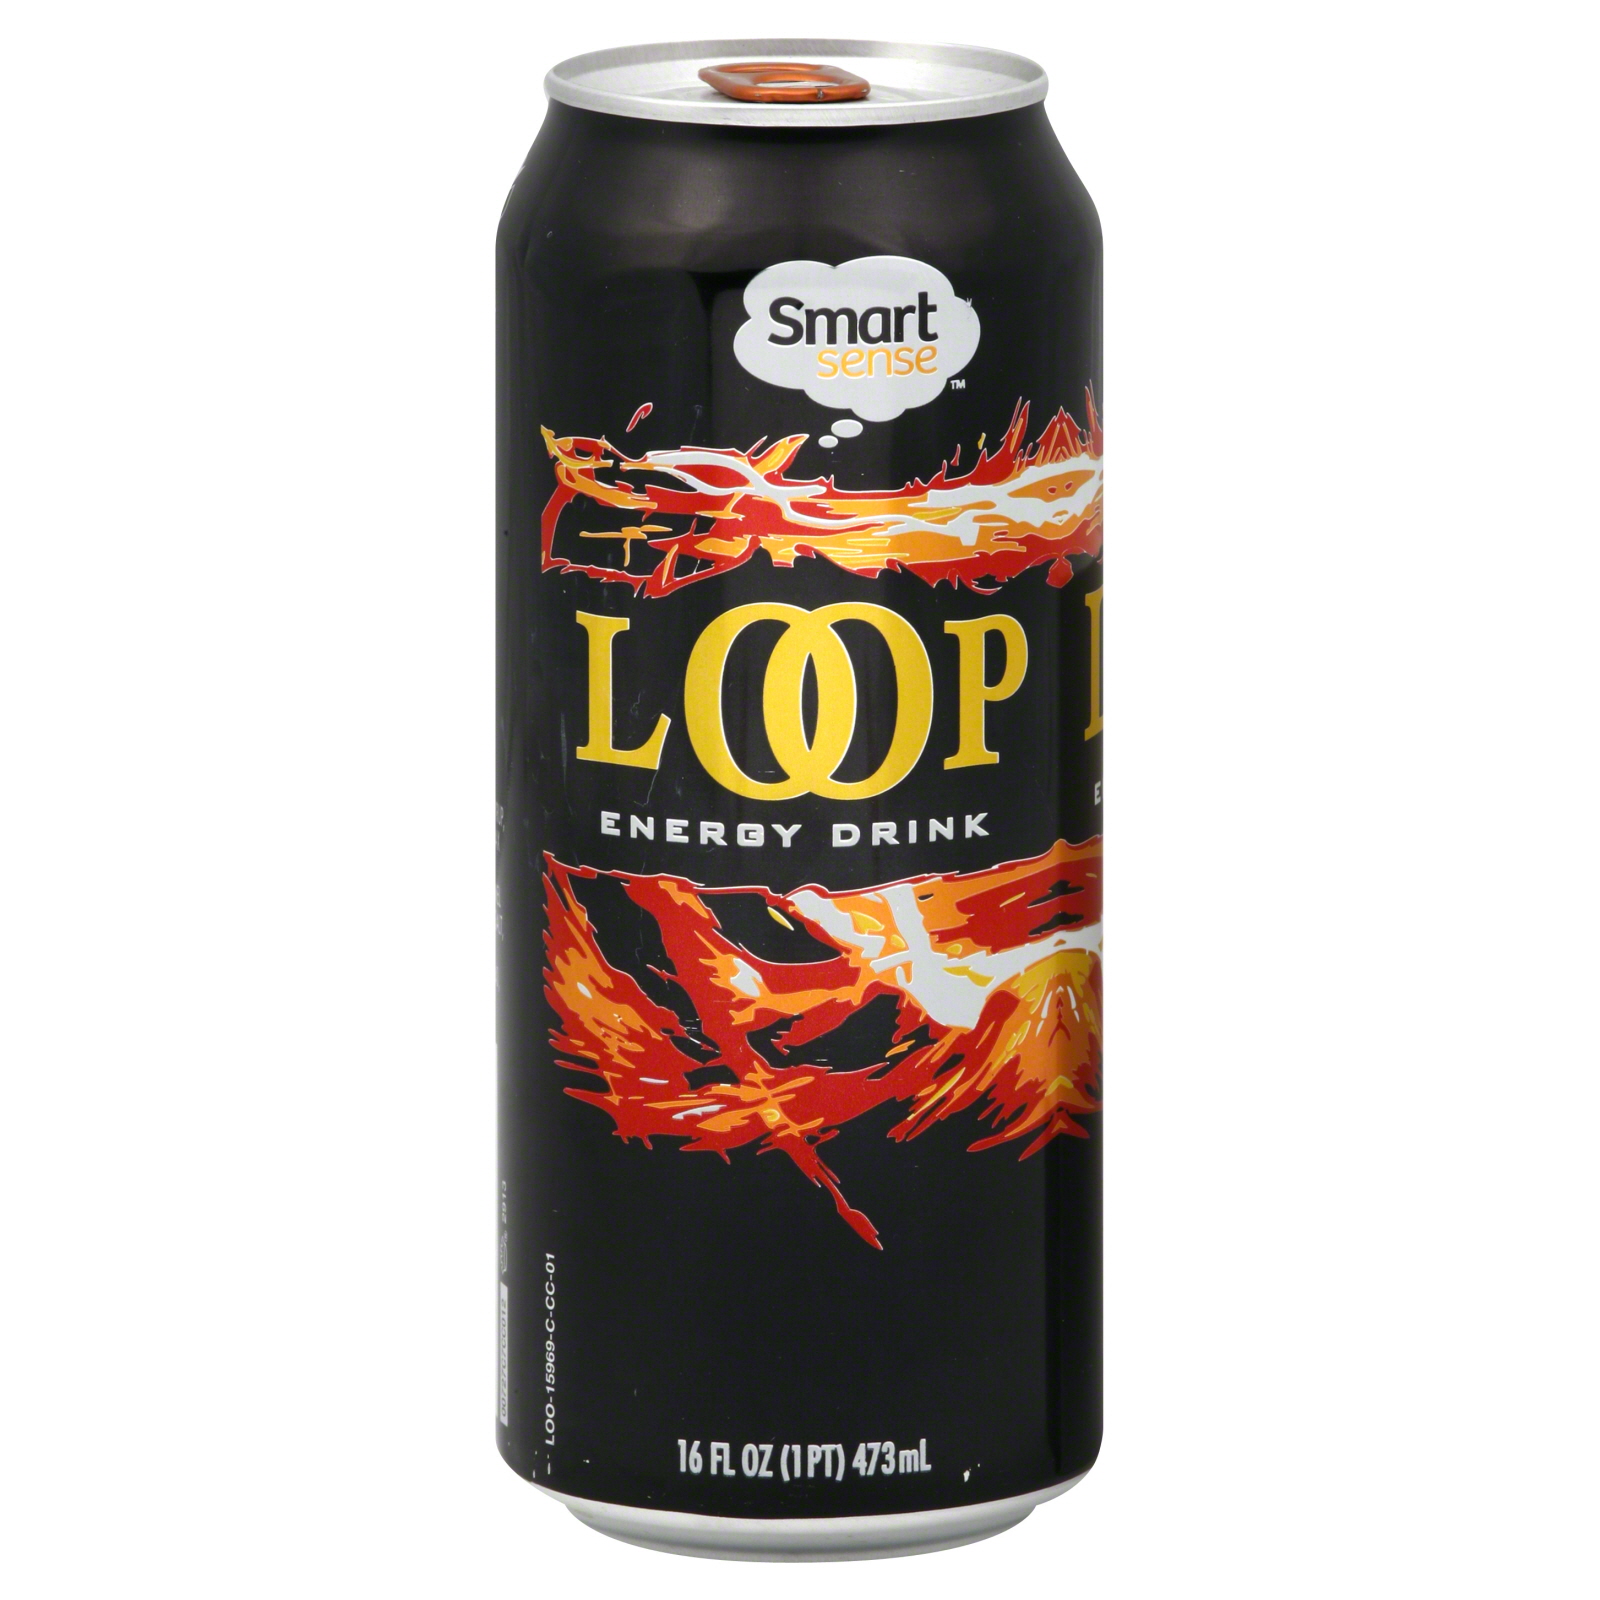 Smart Sense Loop Energy Drink, 16 fl oz (1 pt) 473 ml